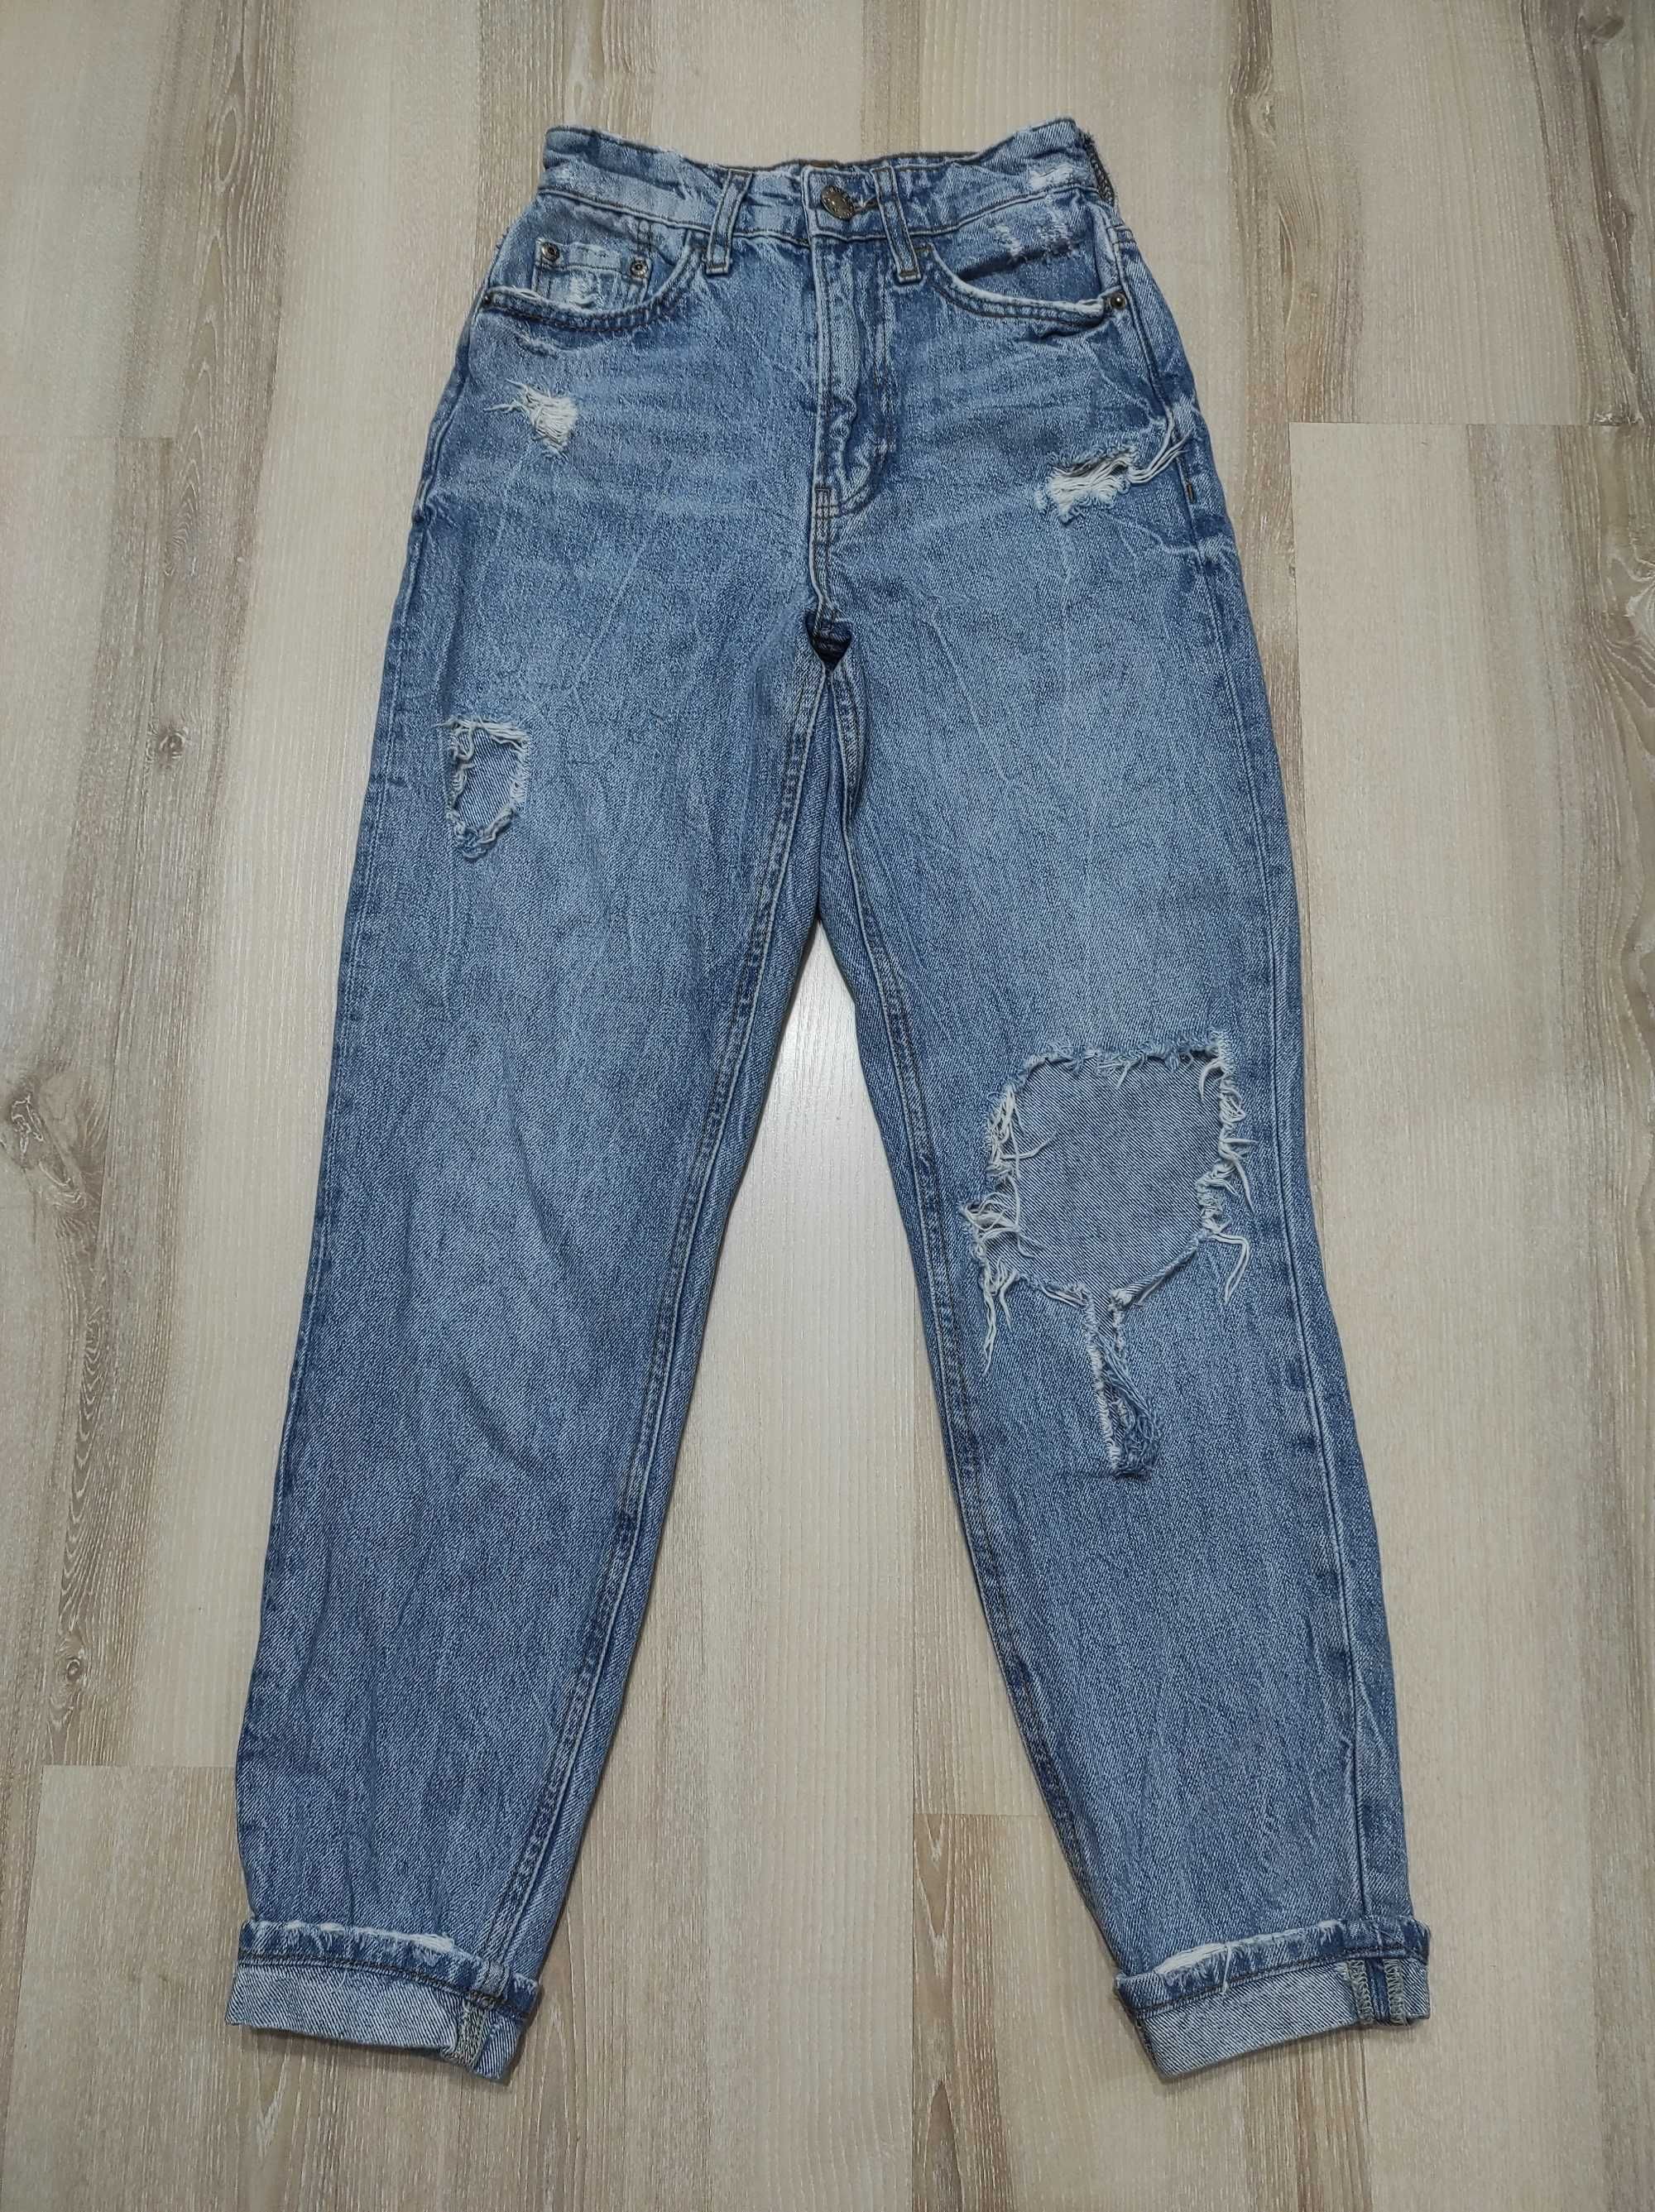 Плотные рваные джинсы Мом, джинсы-бананы River Island XXS-XS